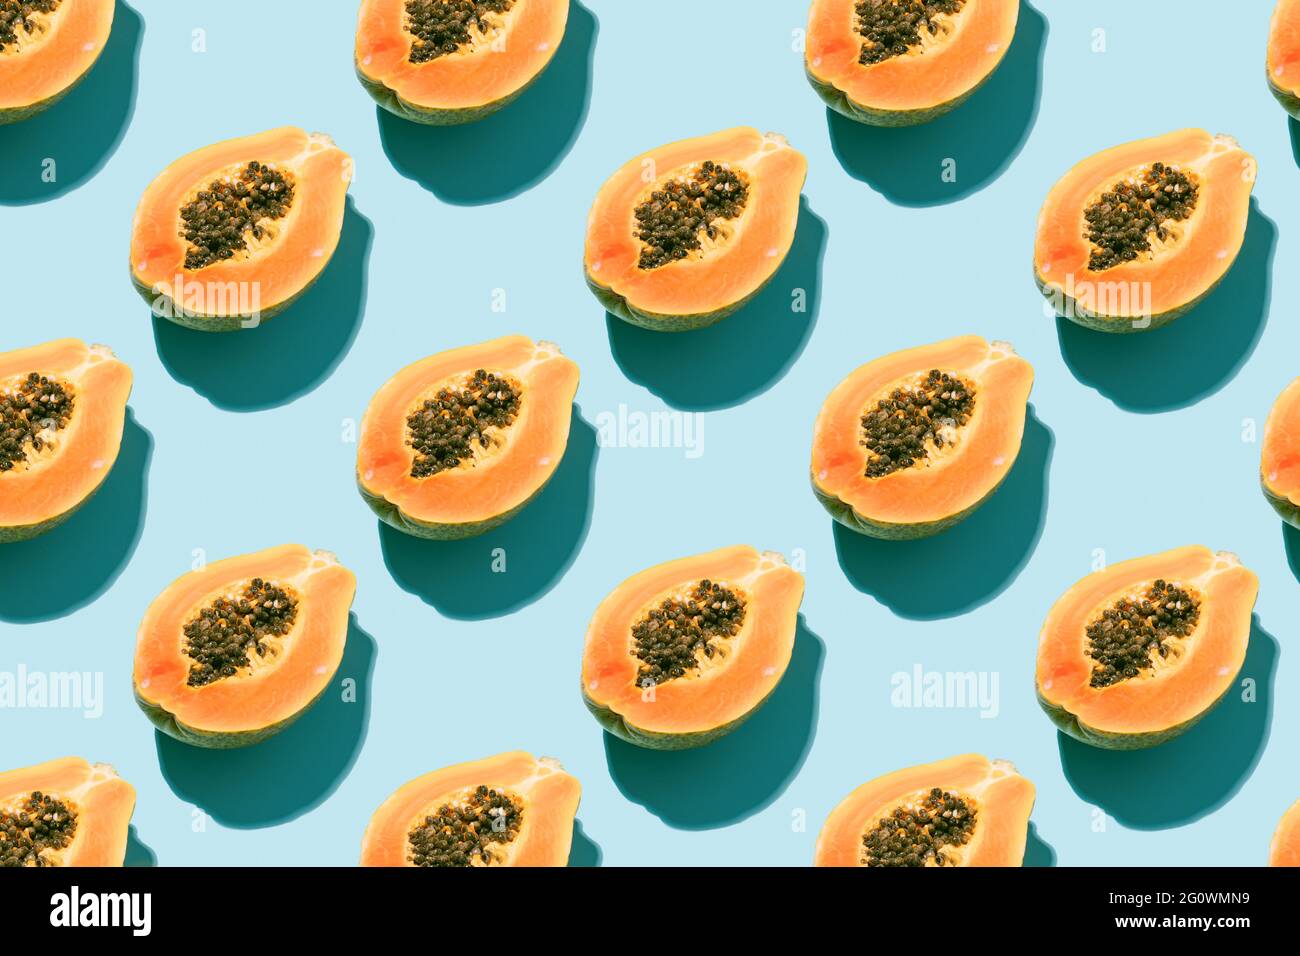 disegno creativo con frutta fresca di papaia con semi neri su sfondo blu. concetto di vacanza, estate e natura. vista dall'alto. Foto Stock